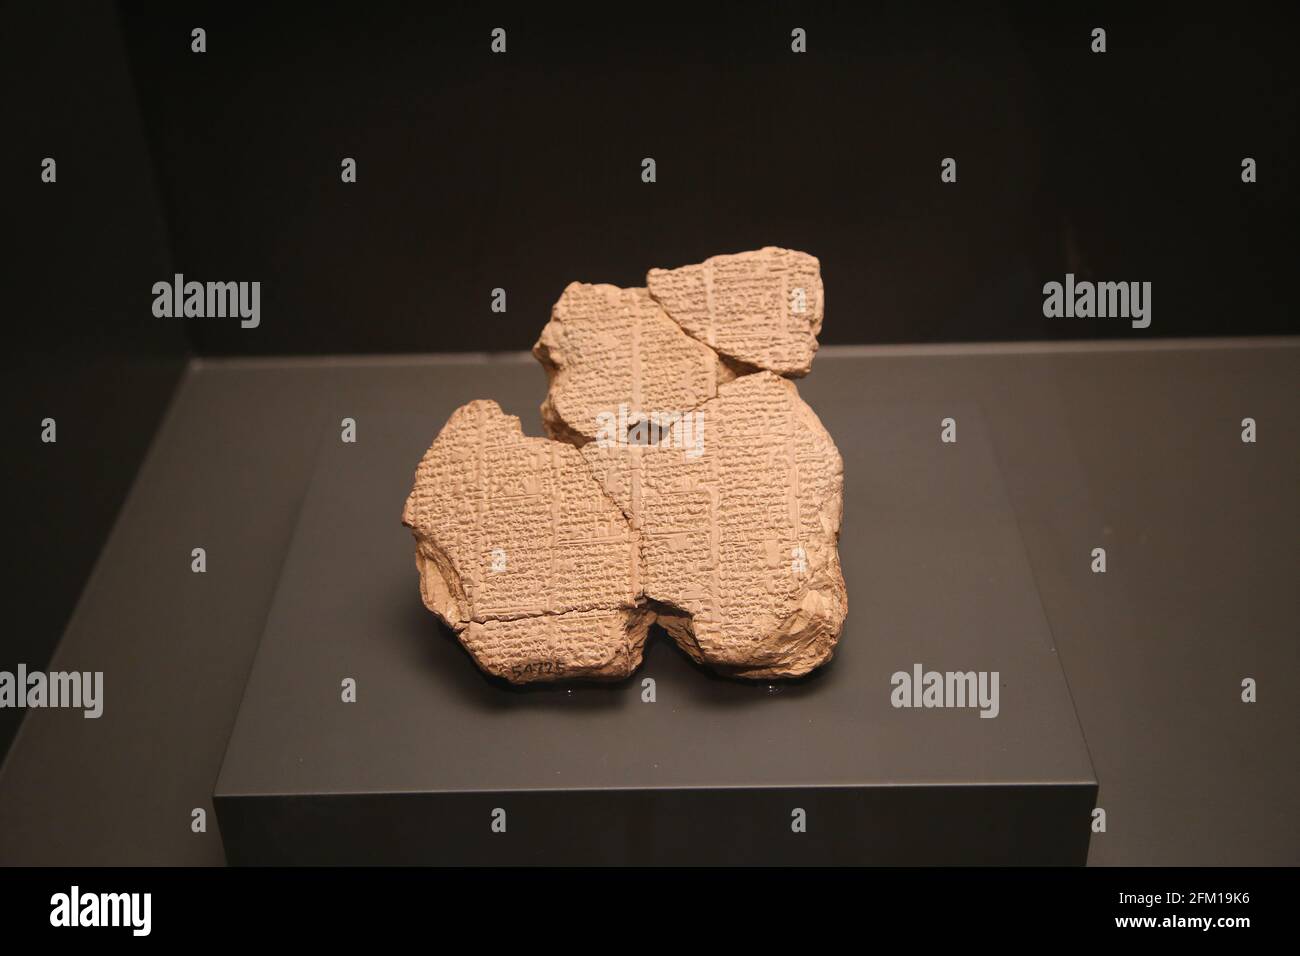 Elenco dei giardinieri di un antico tempio della città di Sippar. Iraq. 650-550 A.C. Argilla. British Museum. Londra. GBR. Foto Stock